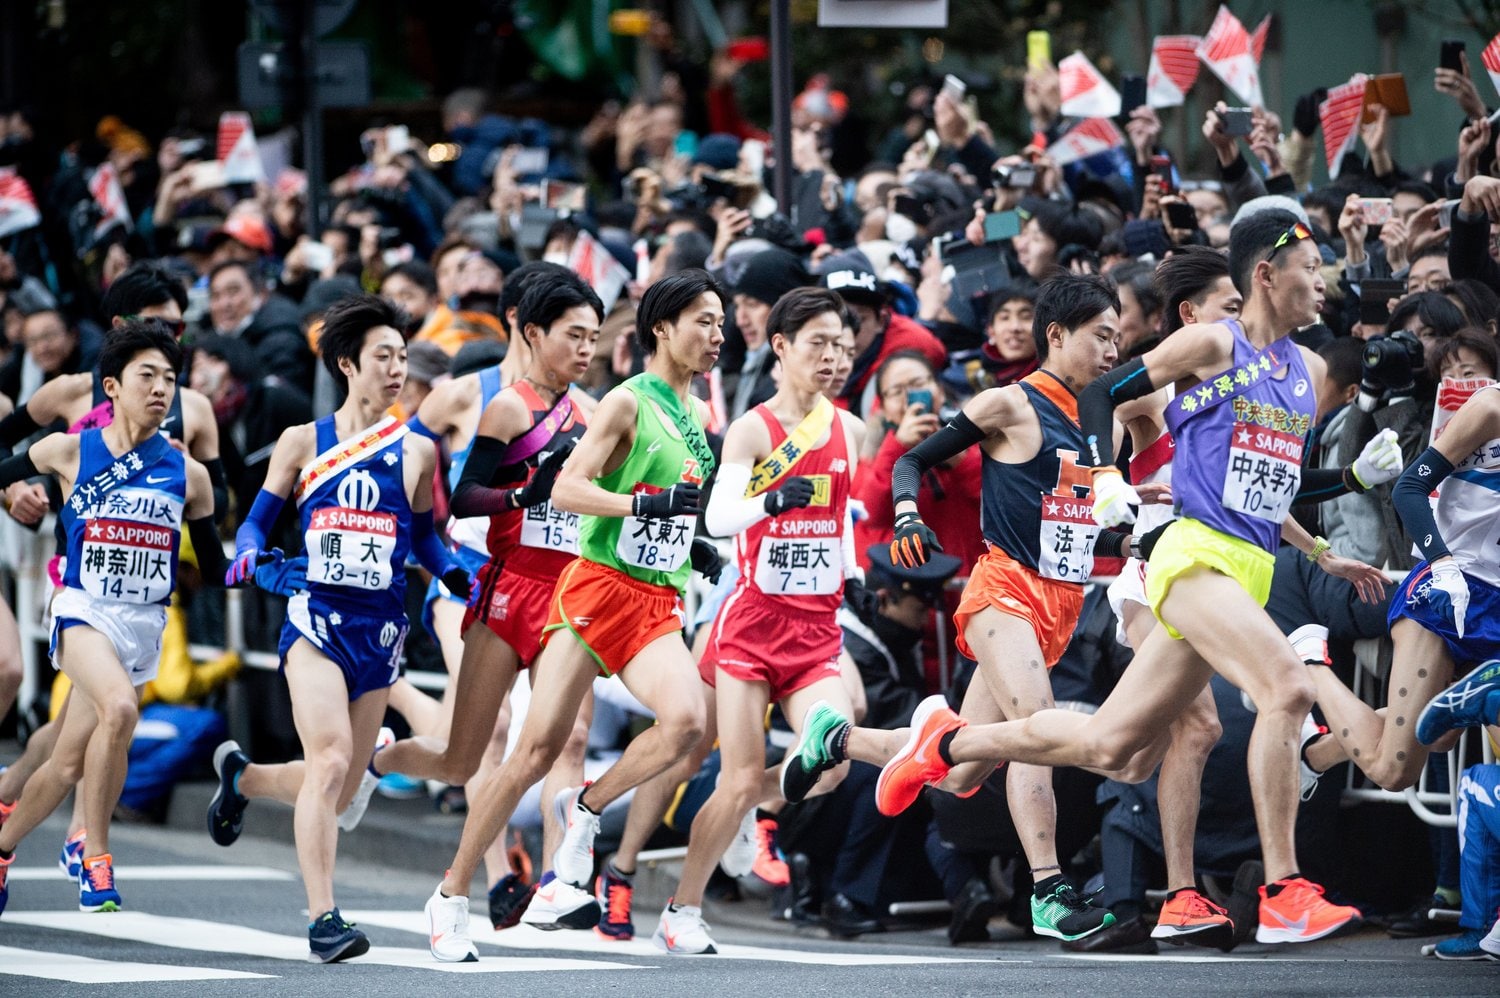 箱根駅伝ランナーの ふくらはぎ はなぜ細い 市民ランナーがマネできるトップ選手の4つのポイント 駅伝 Number Web ナンバー